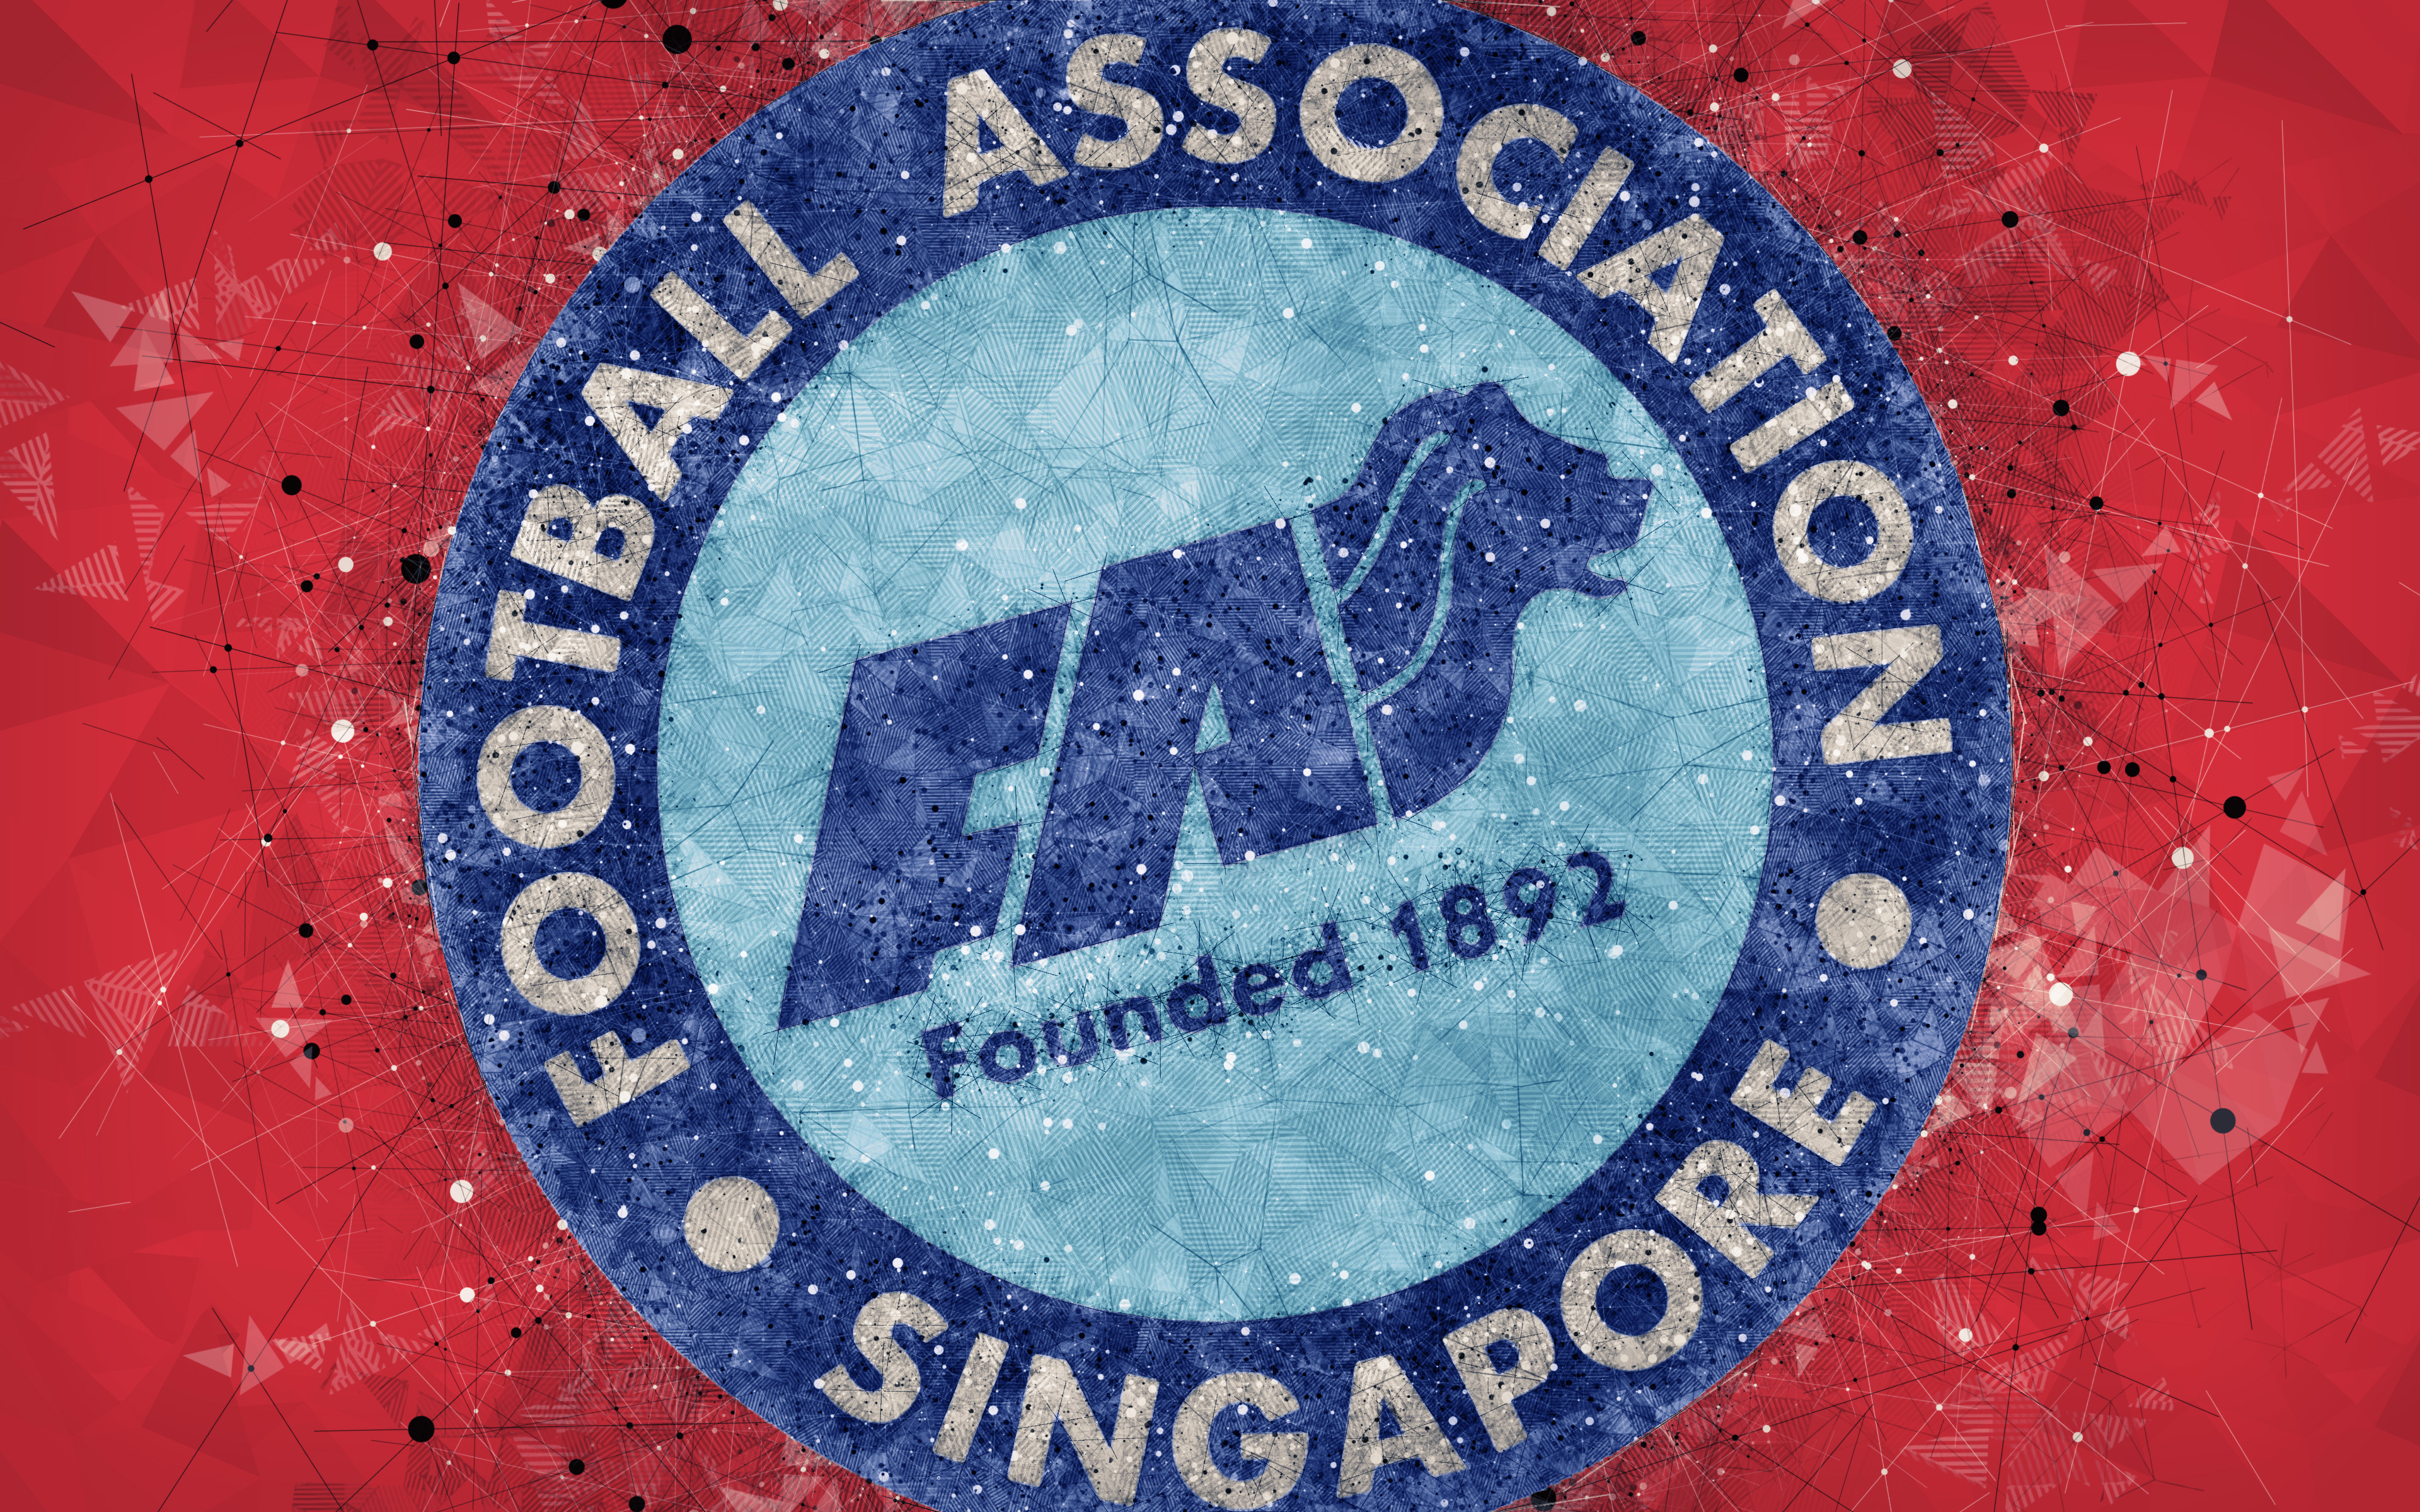 451559 Заставки и Обои Сборная Сингапура По Футболу на телефон. Скачать  картинки бесплатно